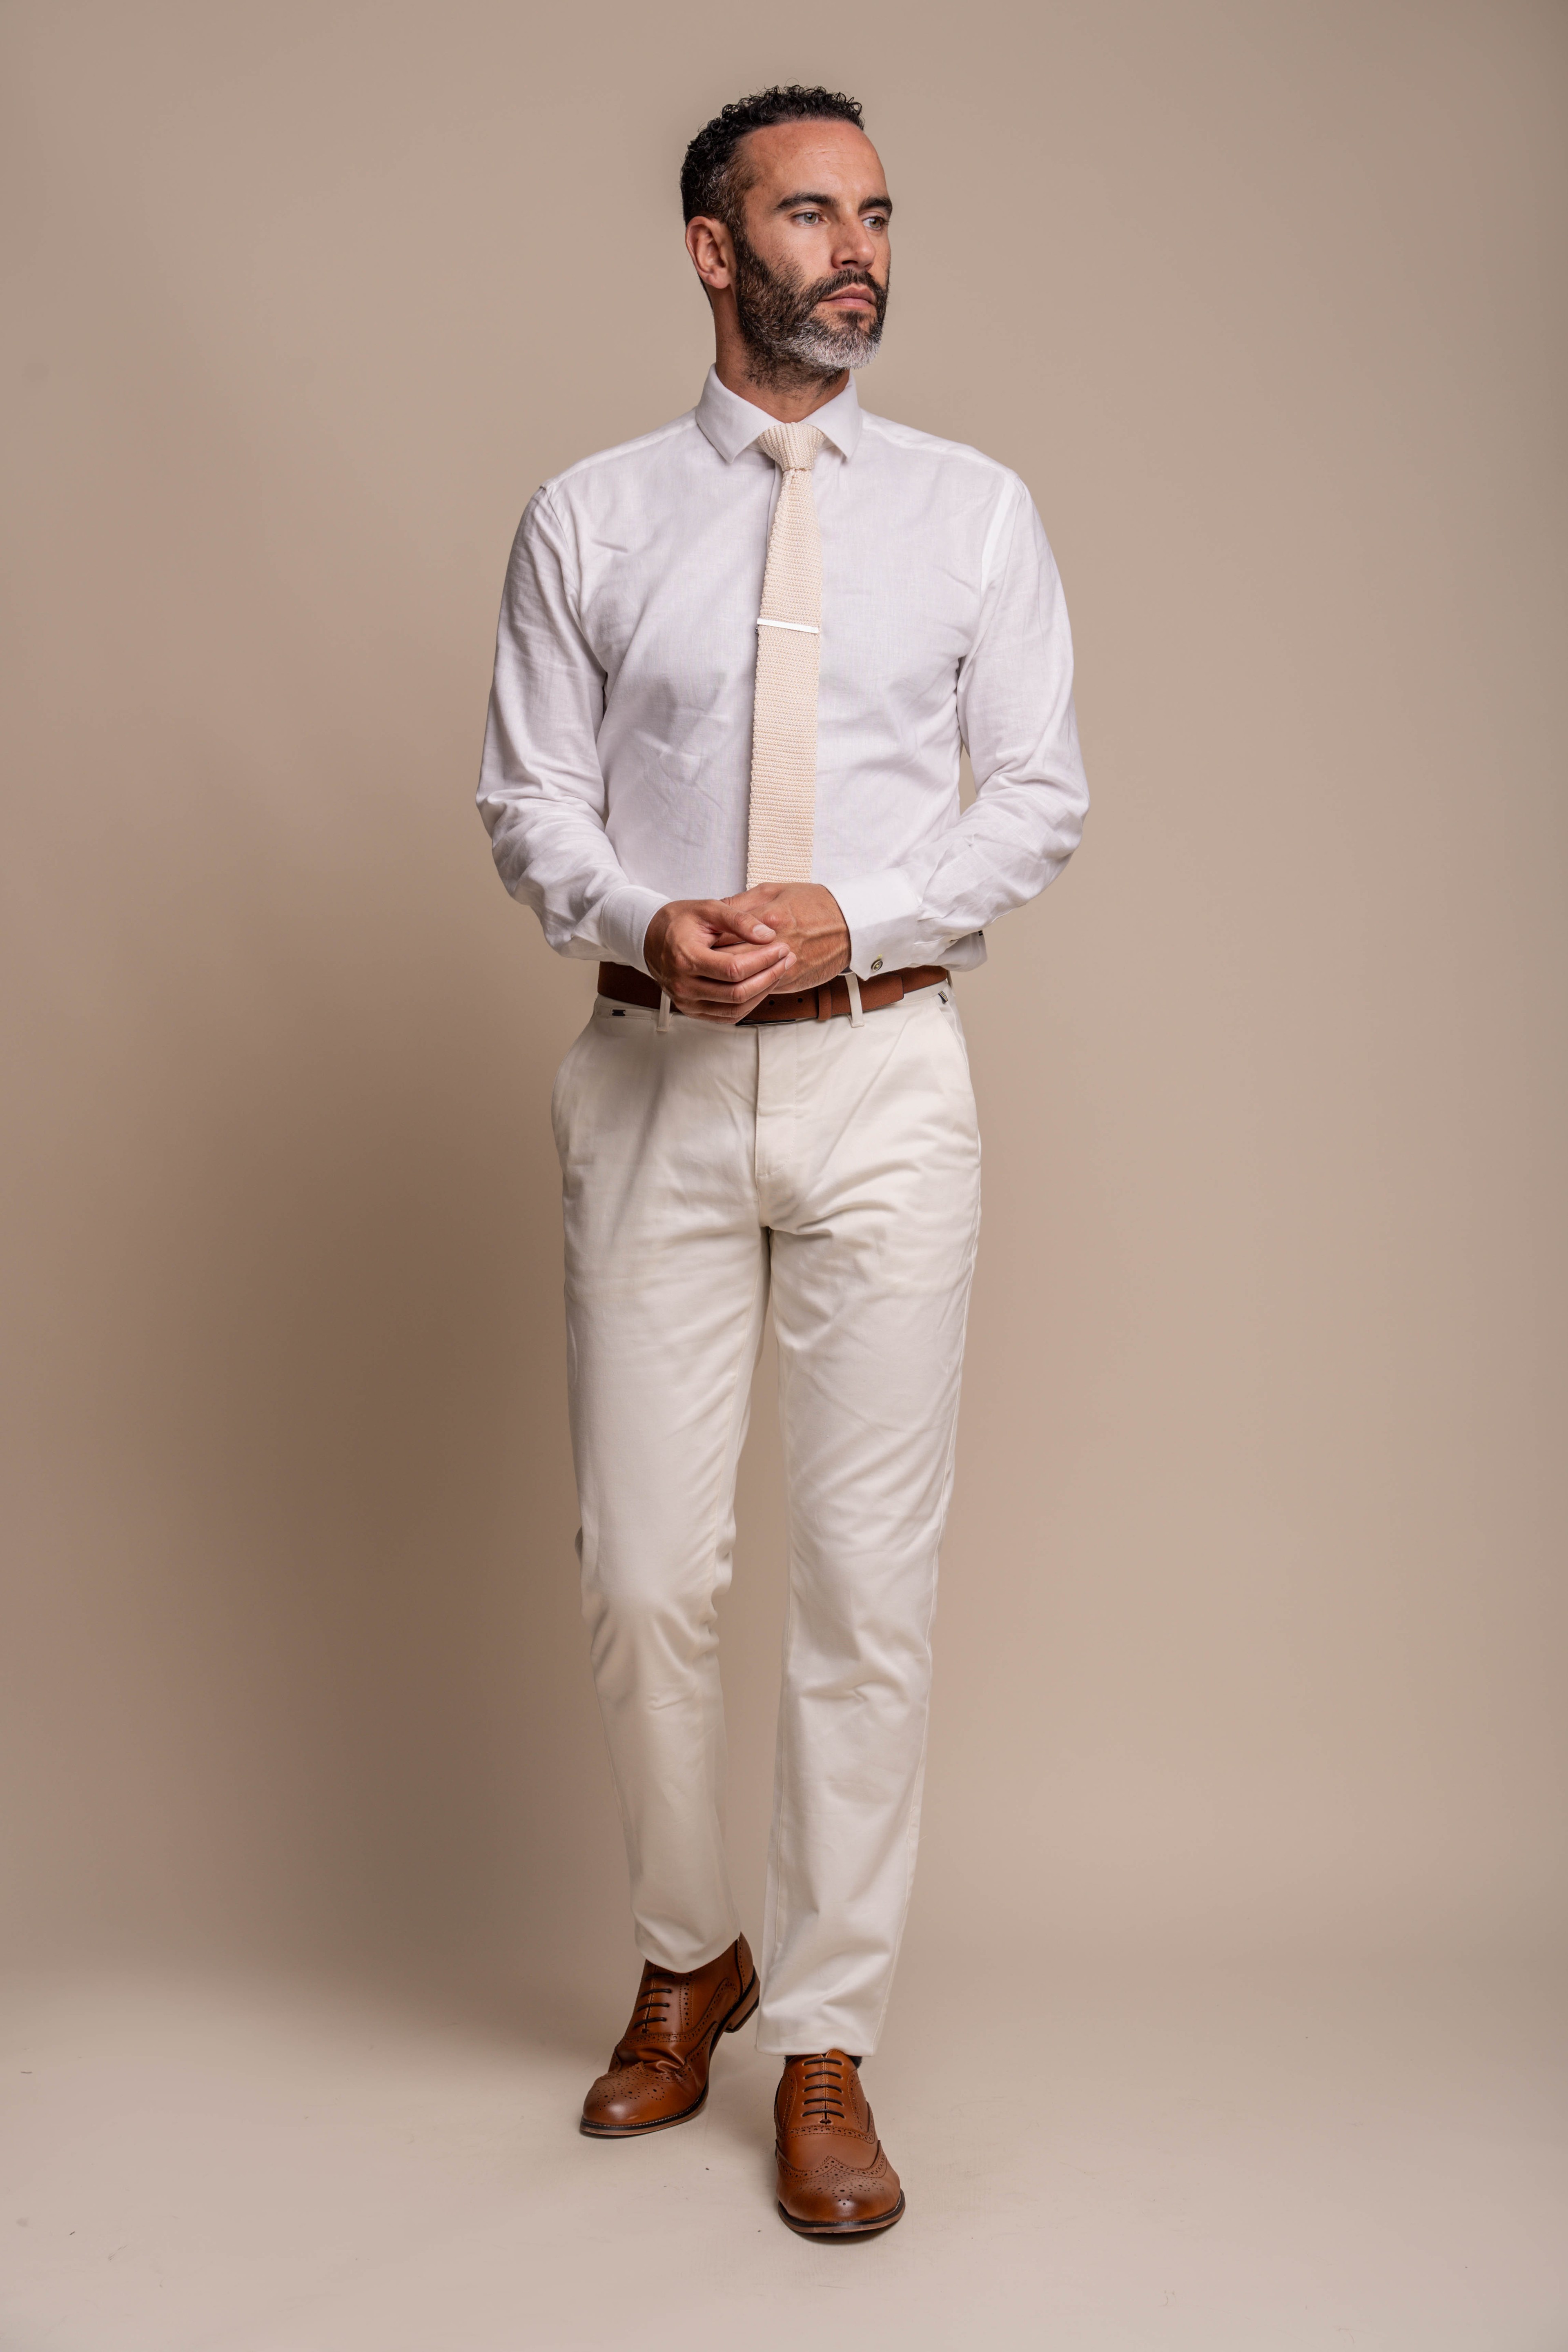 Men's Bond Ocean Suit with Cream Ecru Chinos - Combined Set 